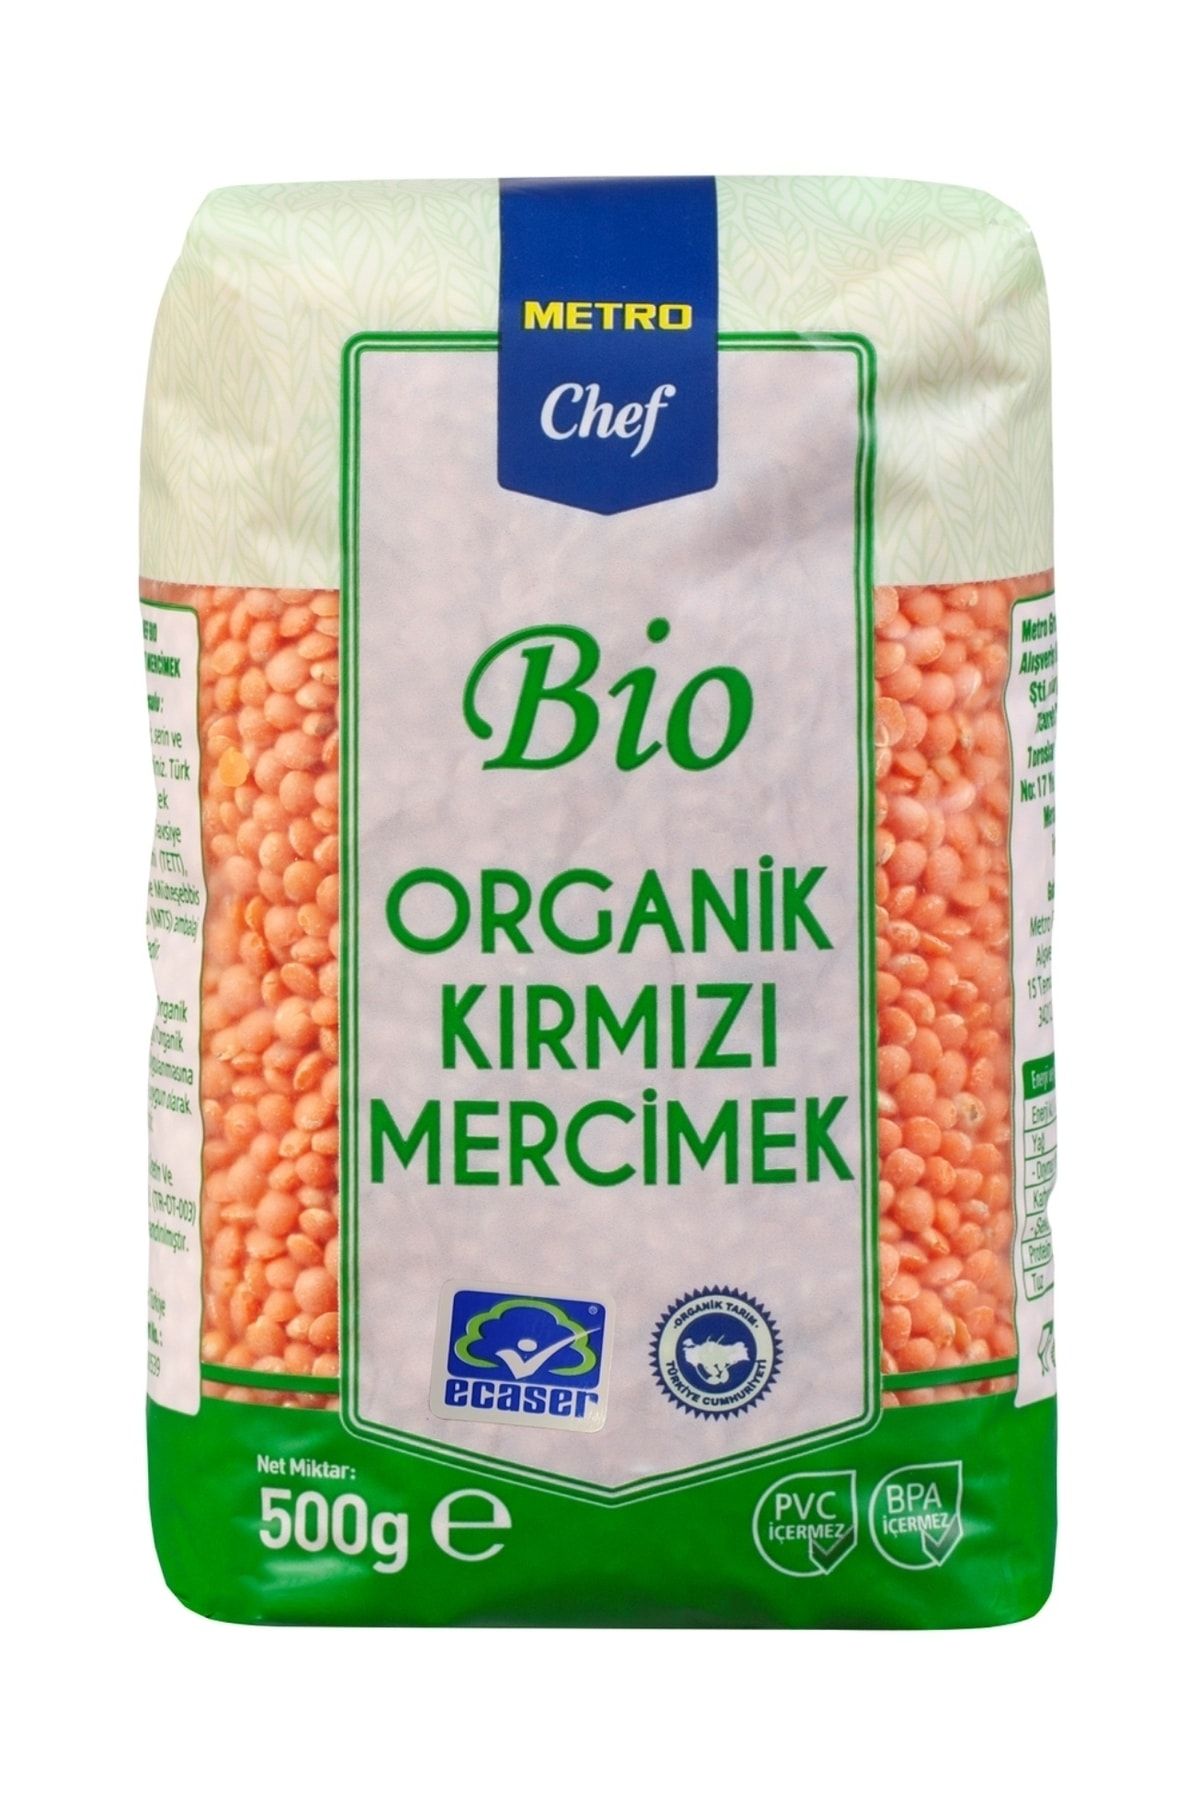 Metro Chef Bio Organik Kırmızı Mercimek - 500g